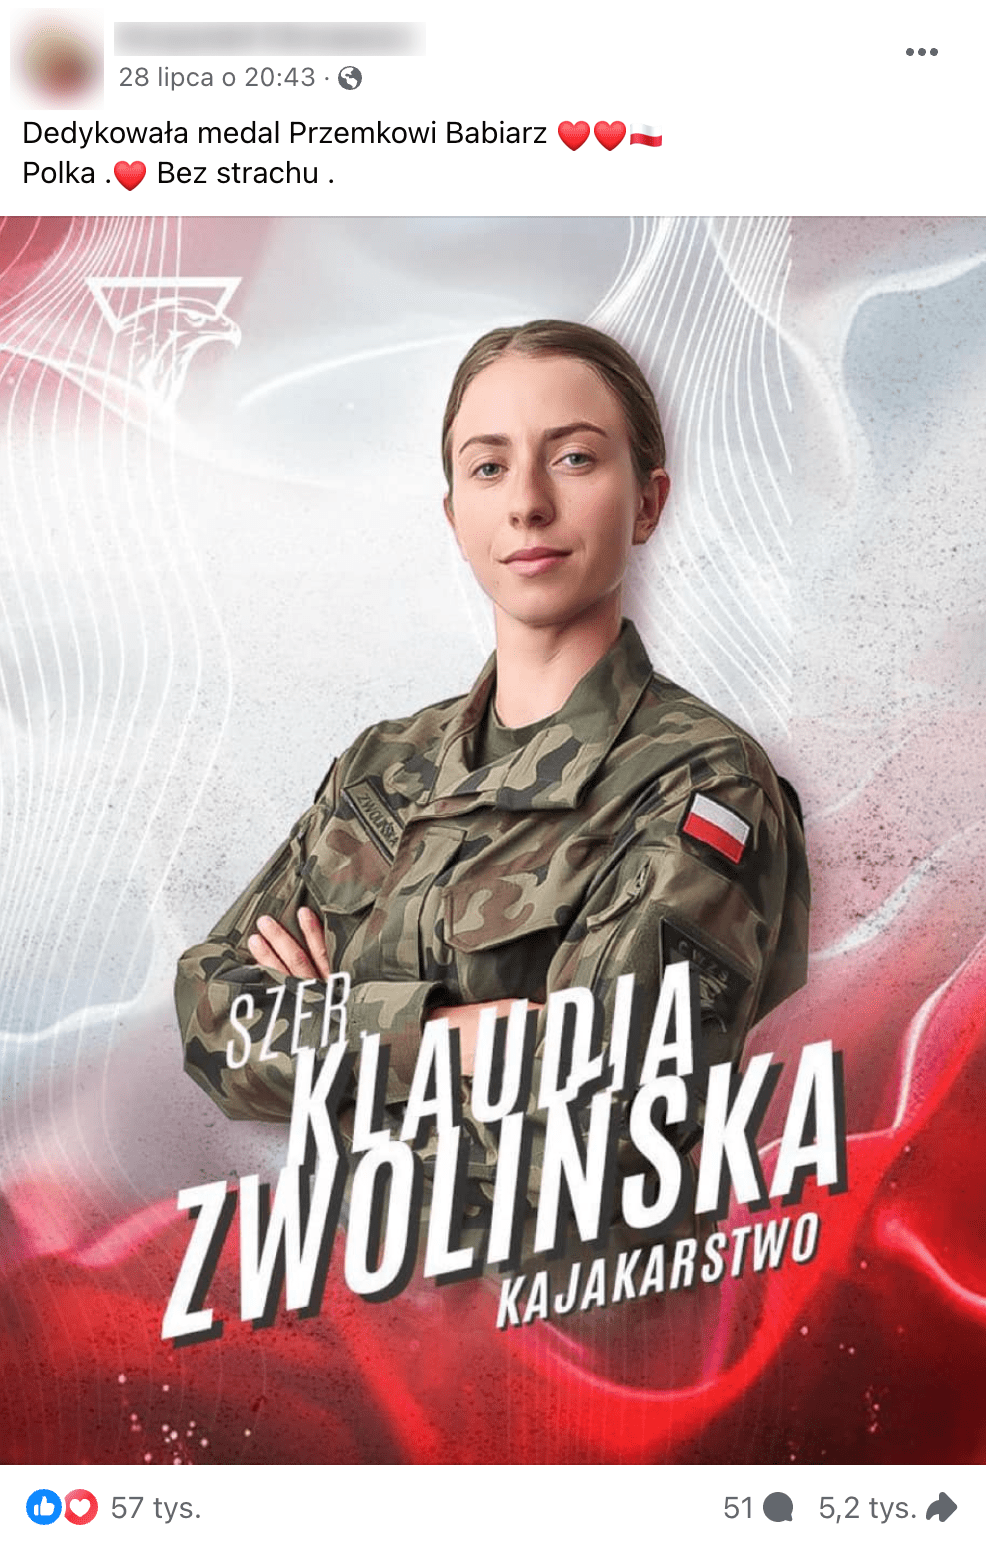 Zrzut ekranu omawianego posta. Widoczna jest na nim Klaudia Zwolińska w mundurze z flagą Polski.